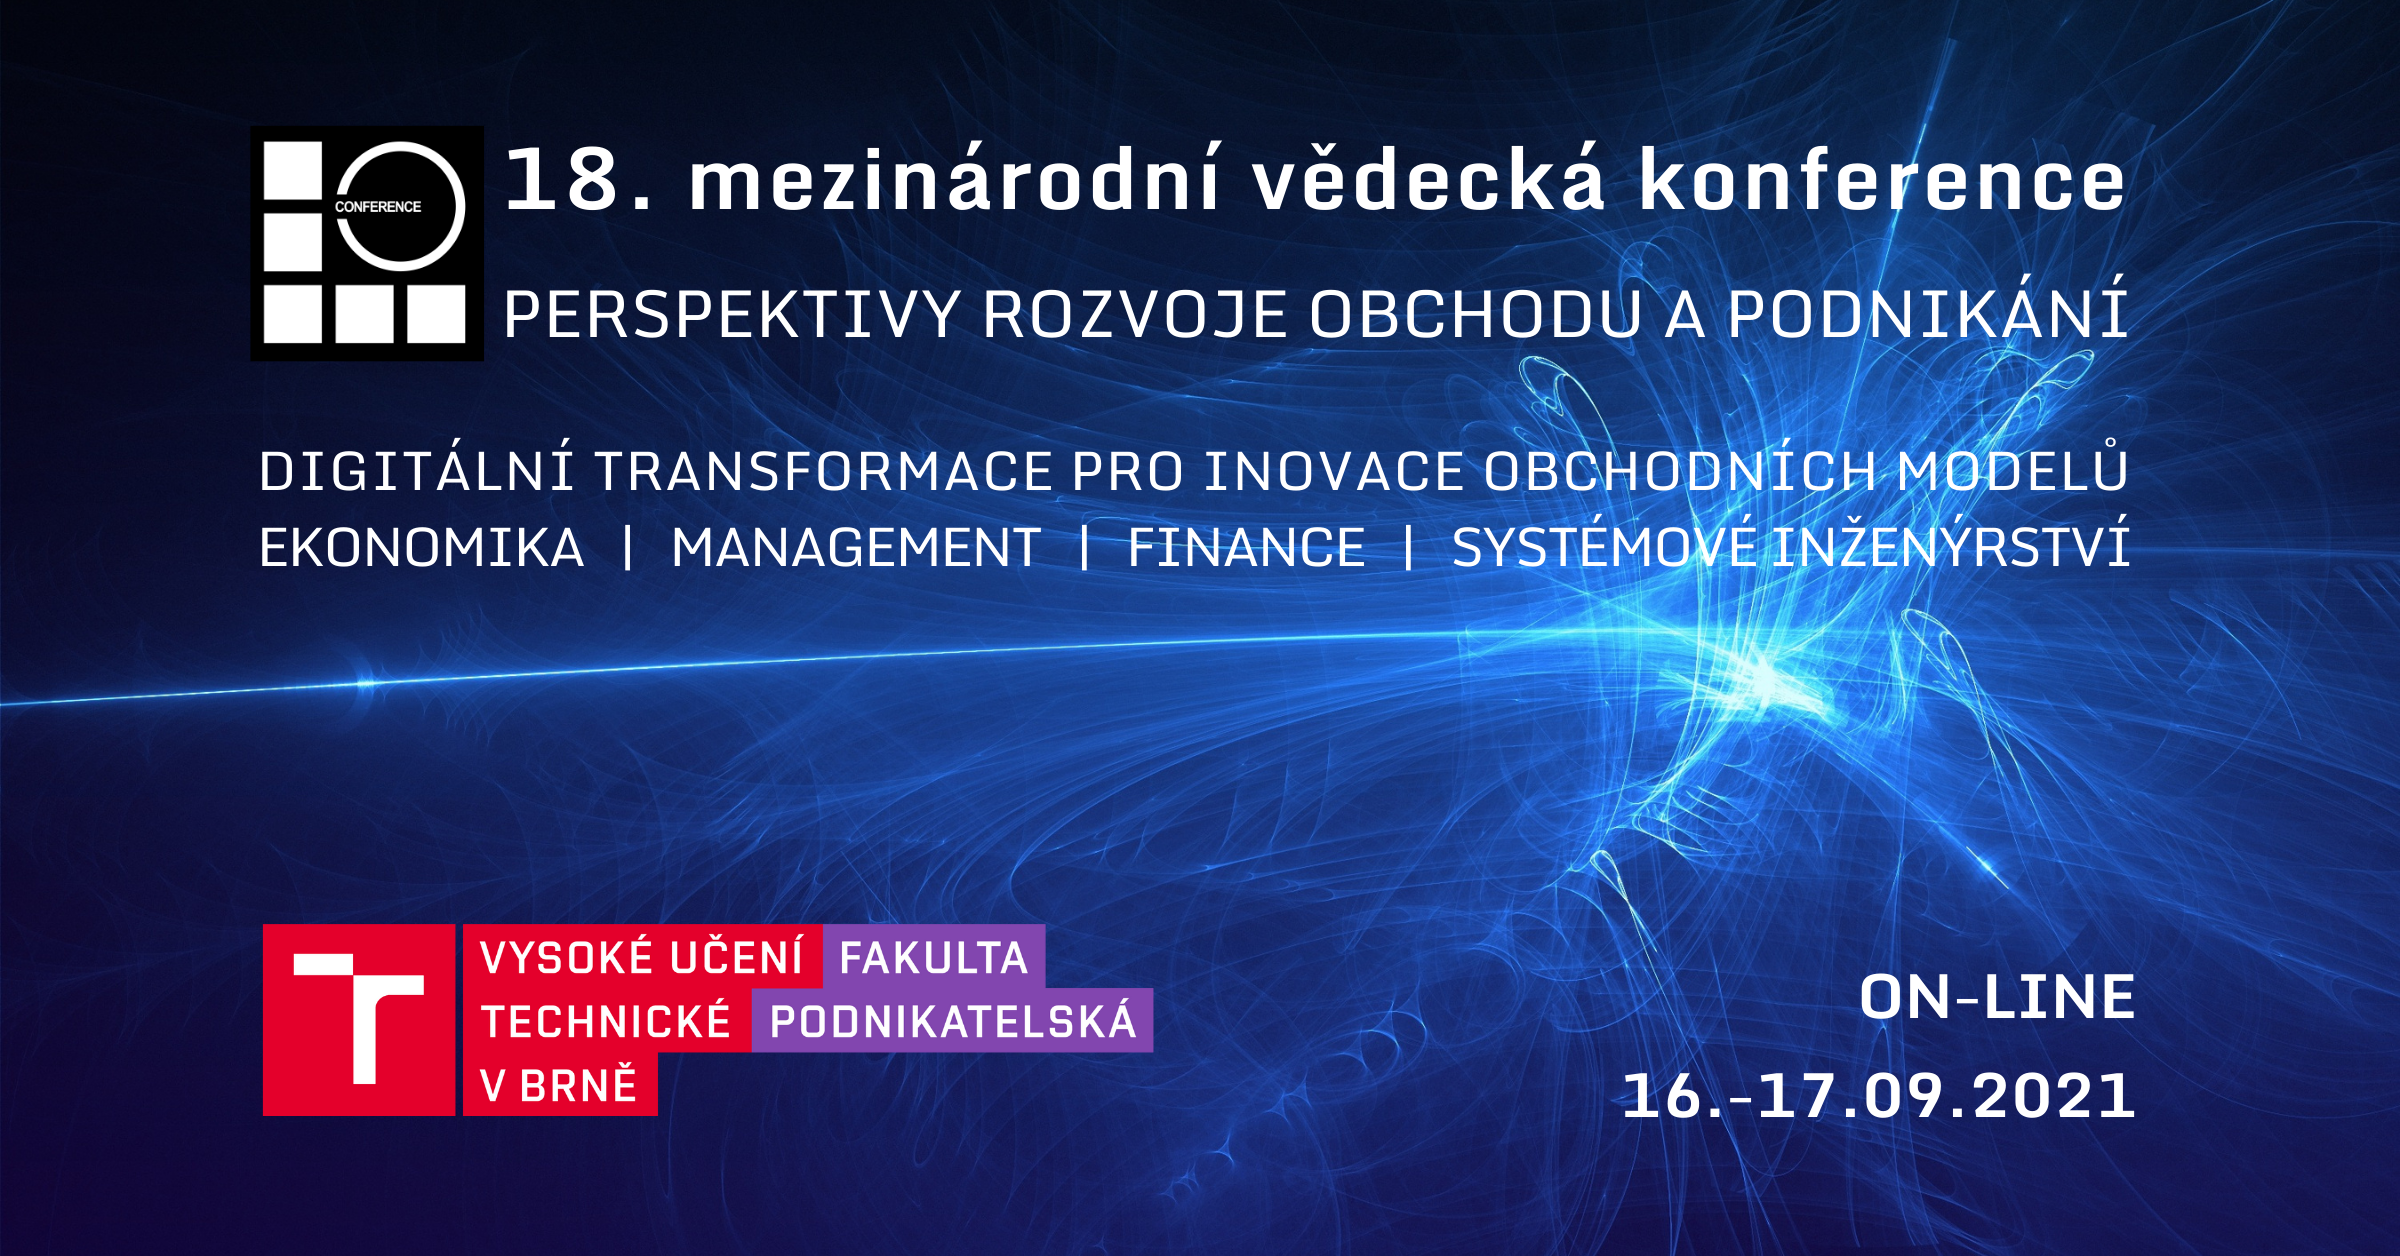 Konference “Perspektivy rozvoje obchodu a podnikání” v Brně